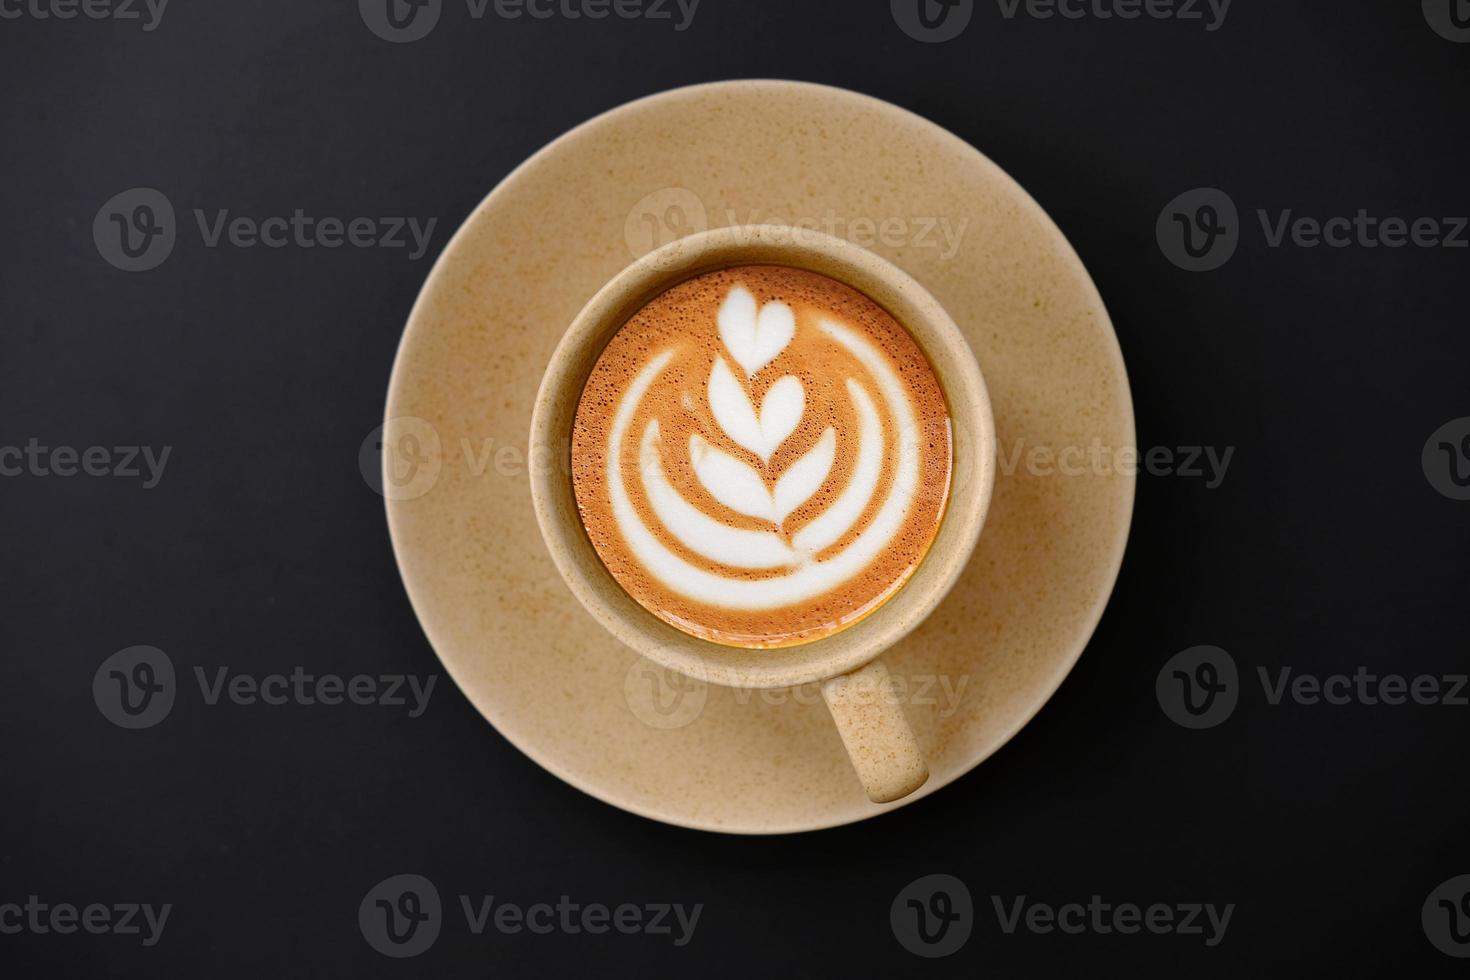 Kaffeetasse auf Tischhintergrund und Kaffee am Morgen foto